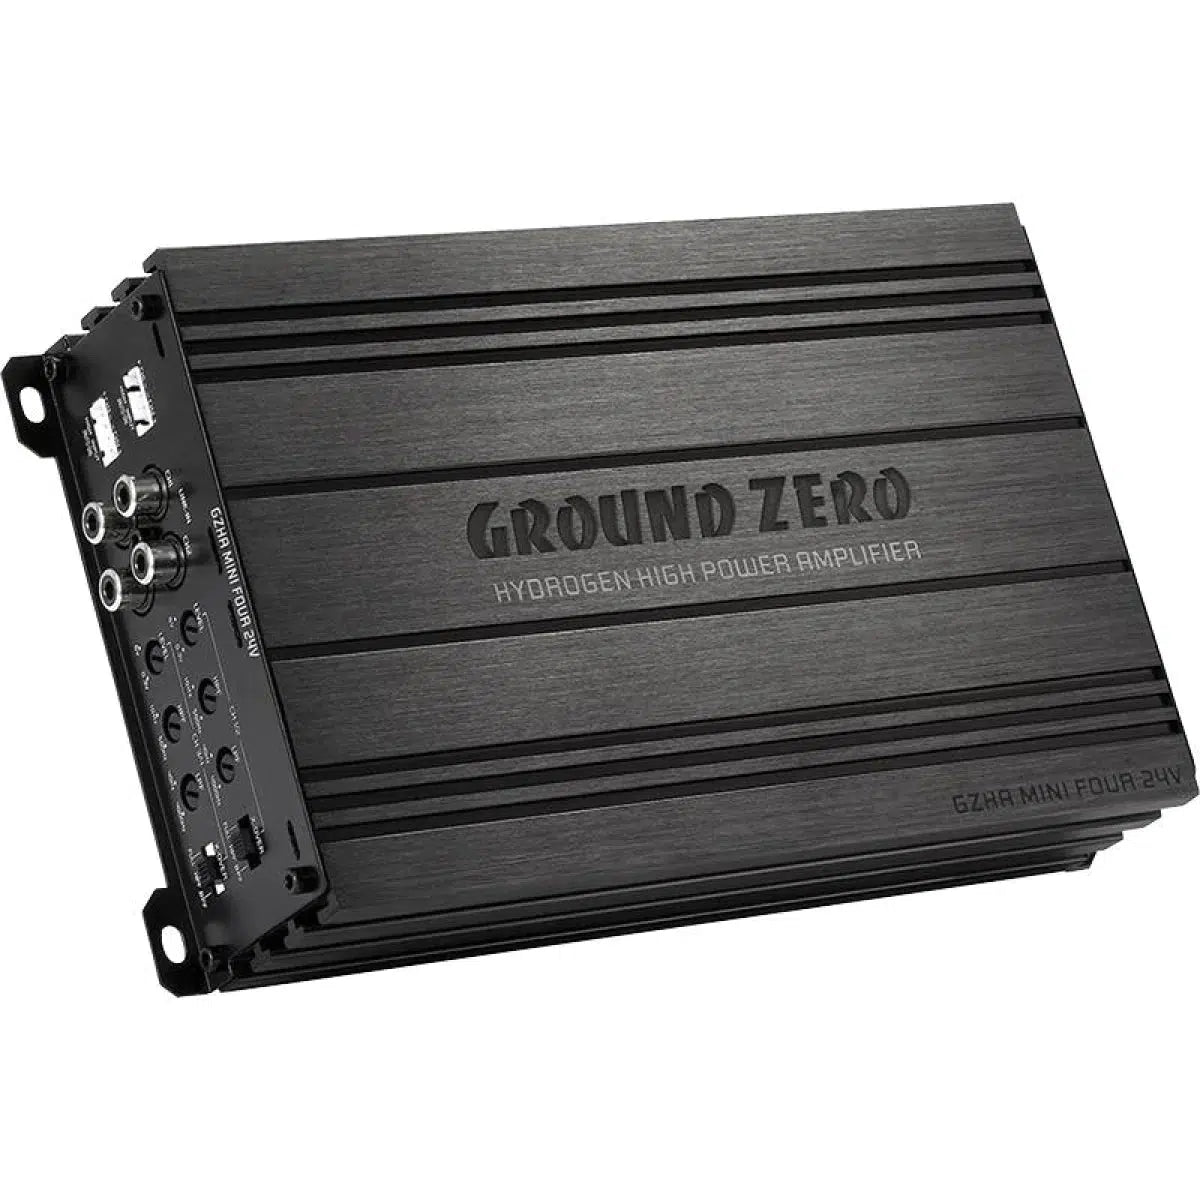 Ground Zero-Hydrogen GZHA MINI FOUR 24V-4-channel amplifier-Masori.de